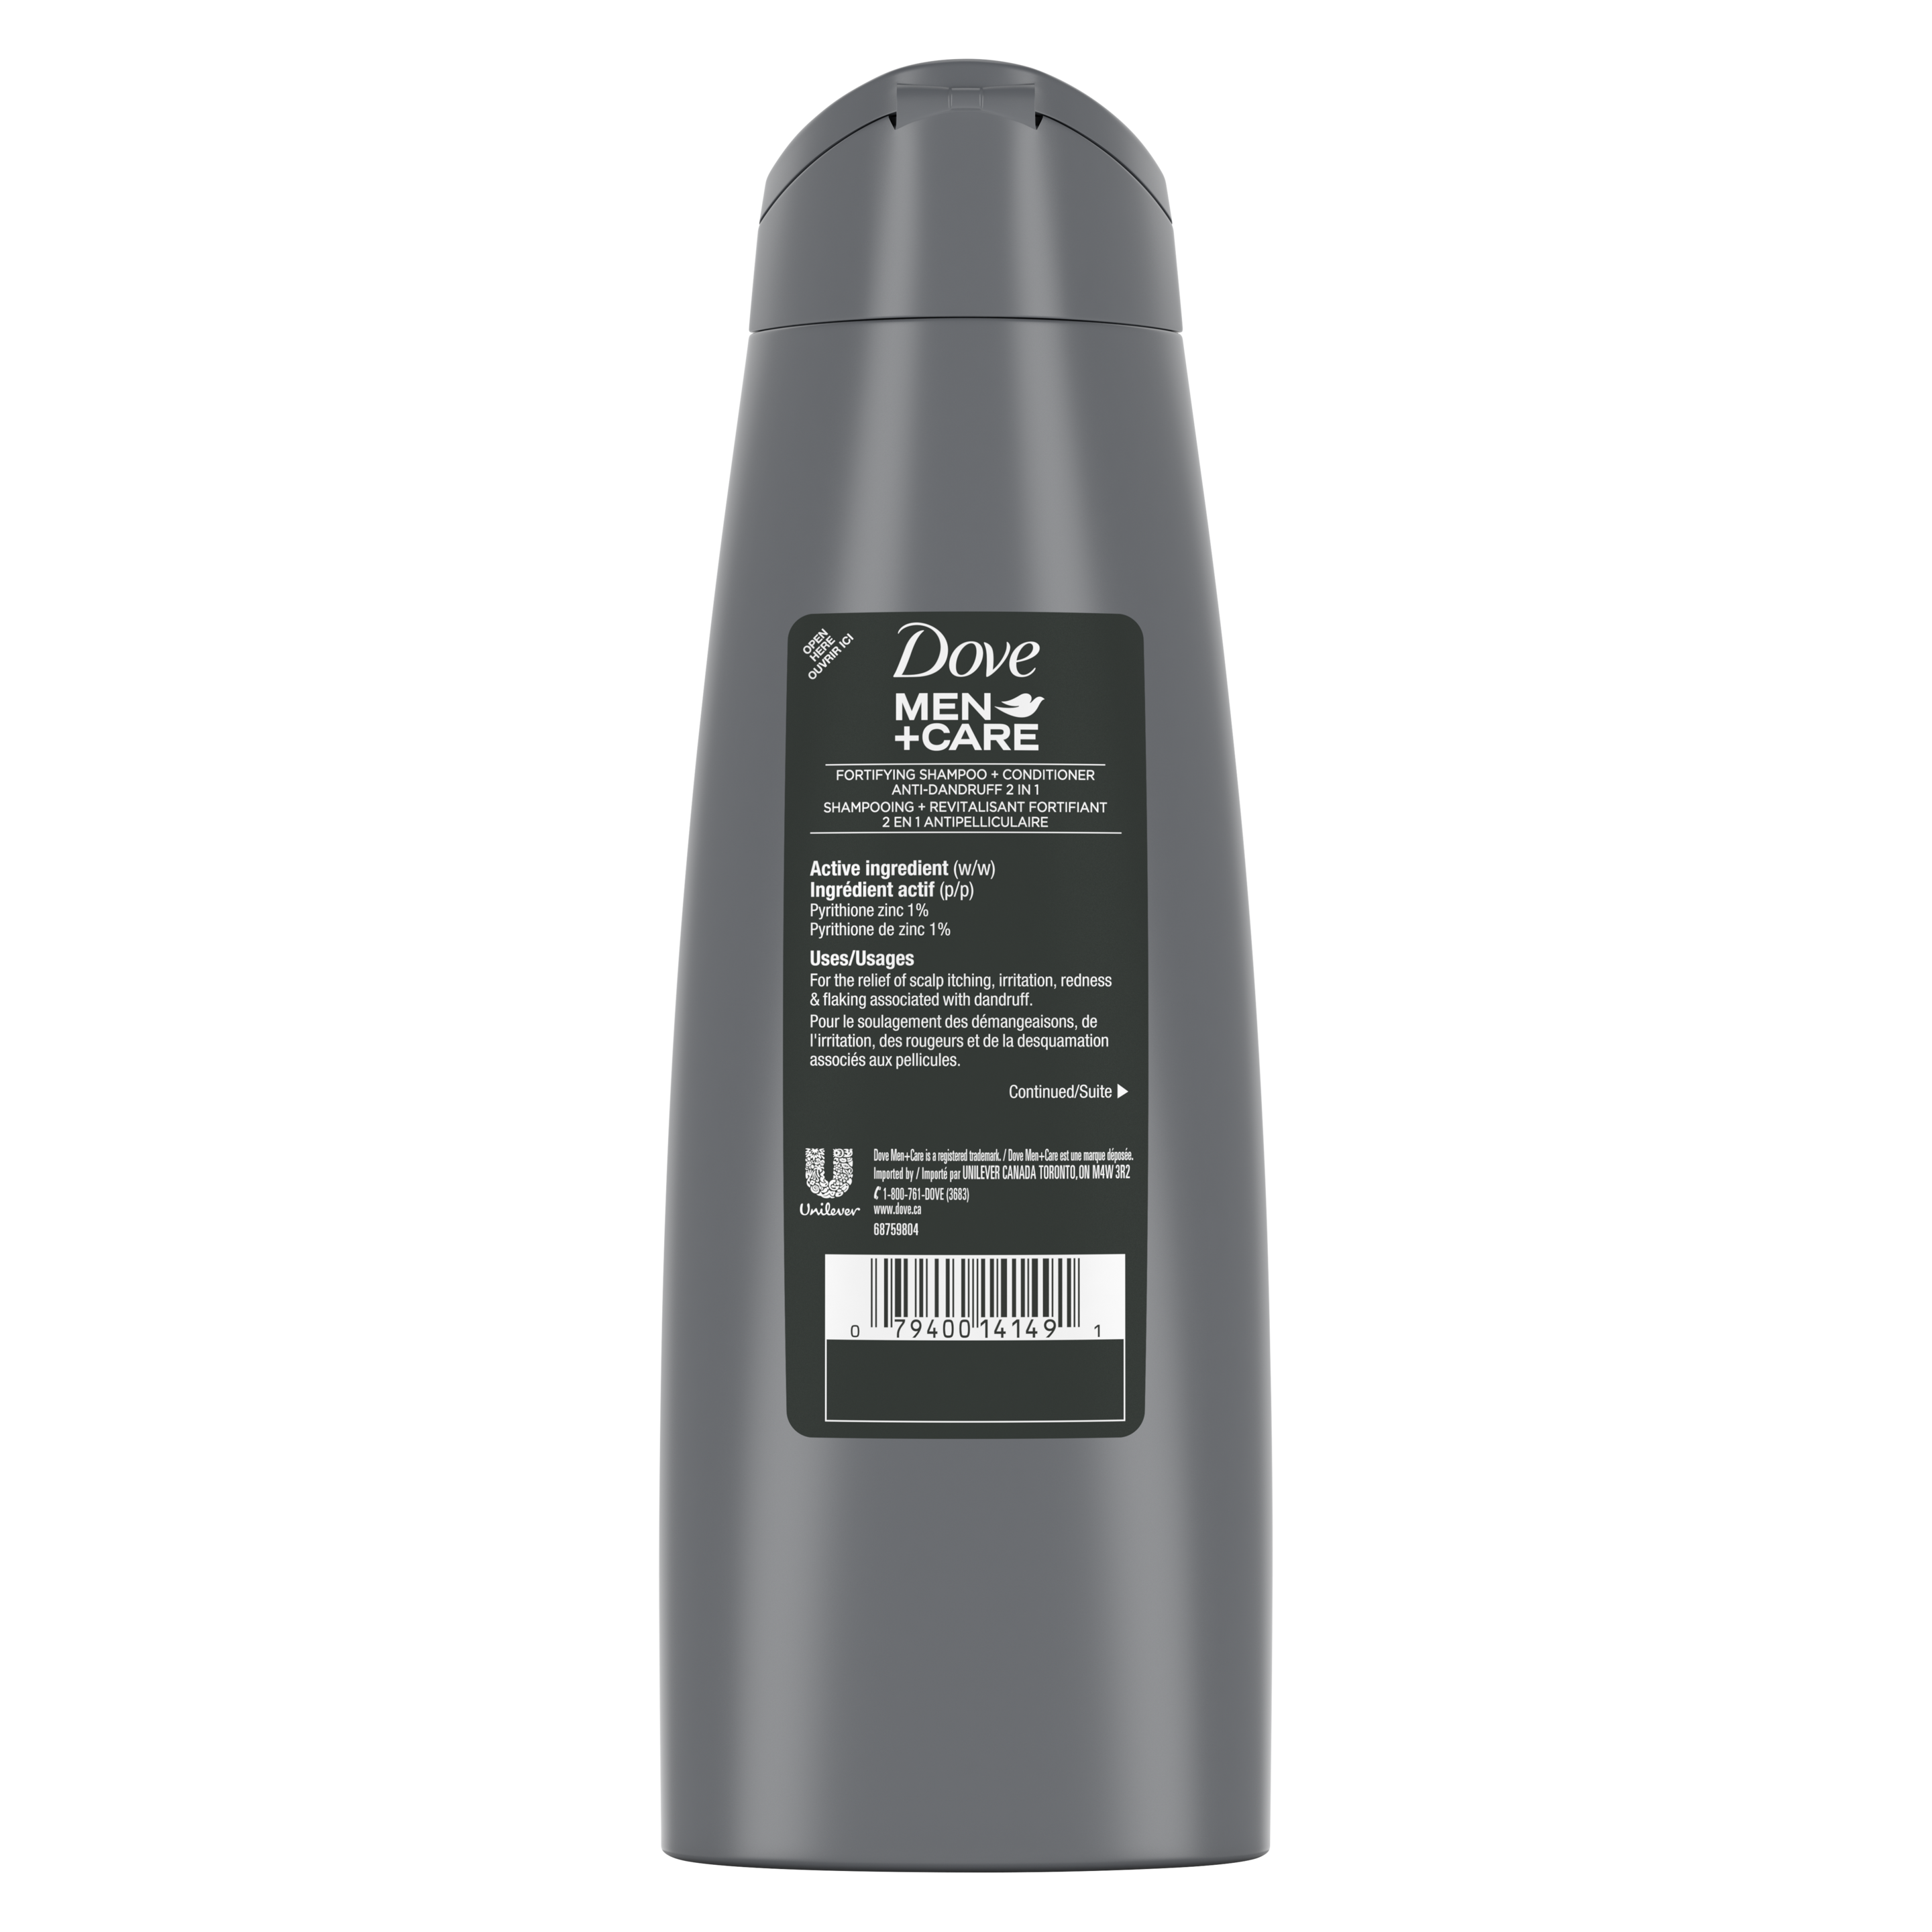 Men+Care Anti-Dandruff Shampoo and Conditioner 355ml Back